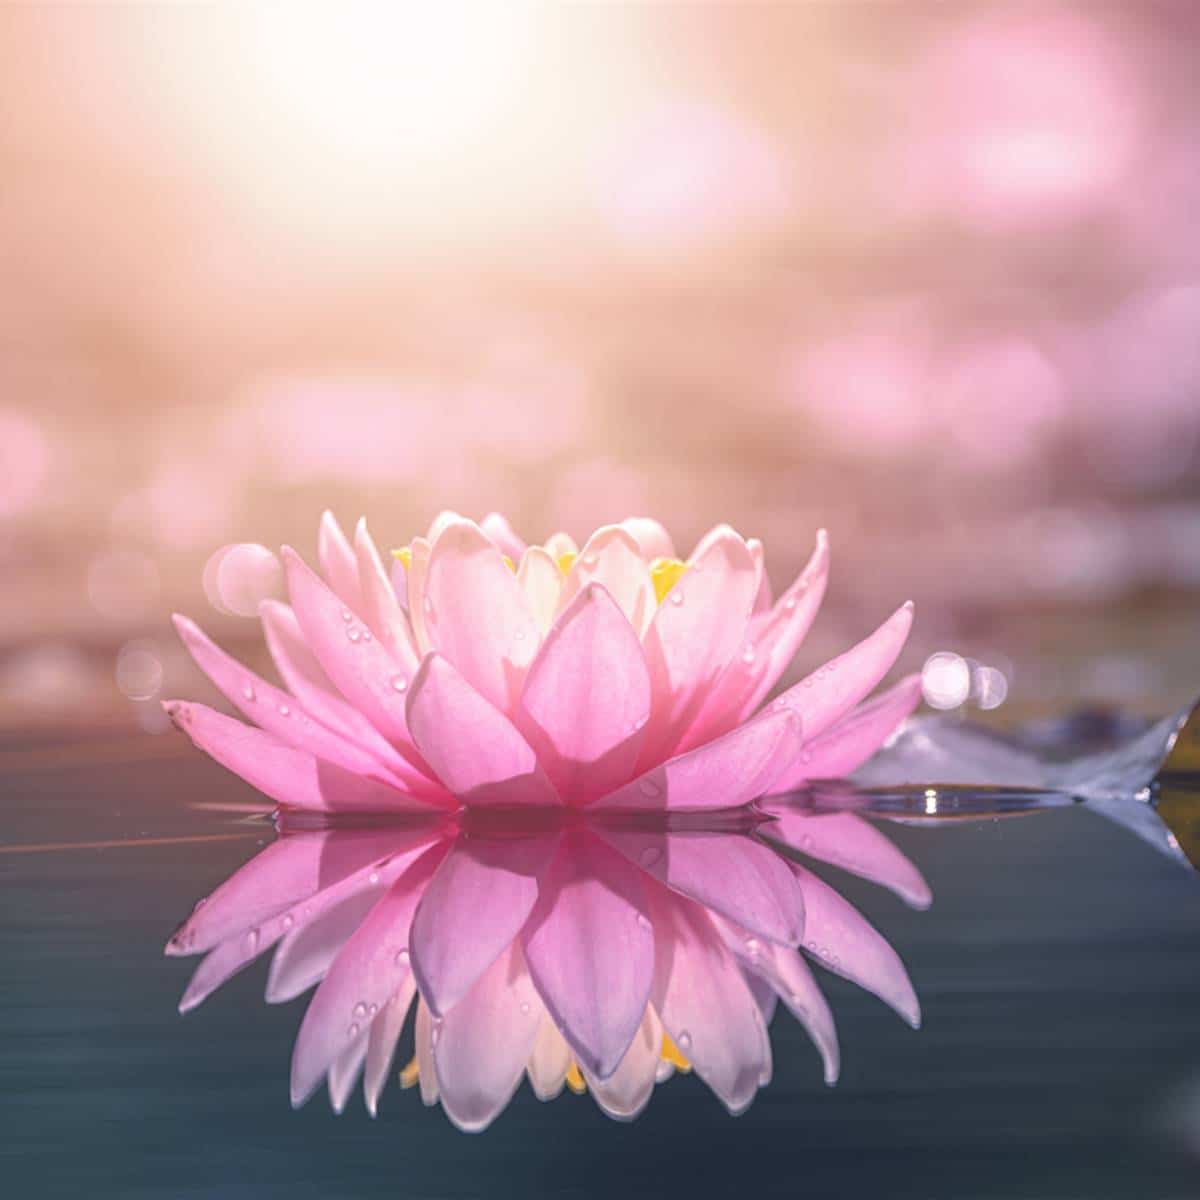 El poder espiritual de las flores: significados que transformarán tu vida